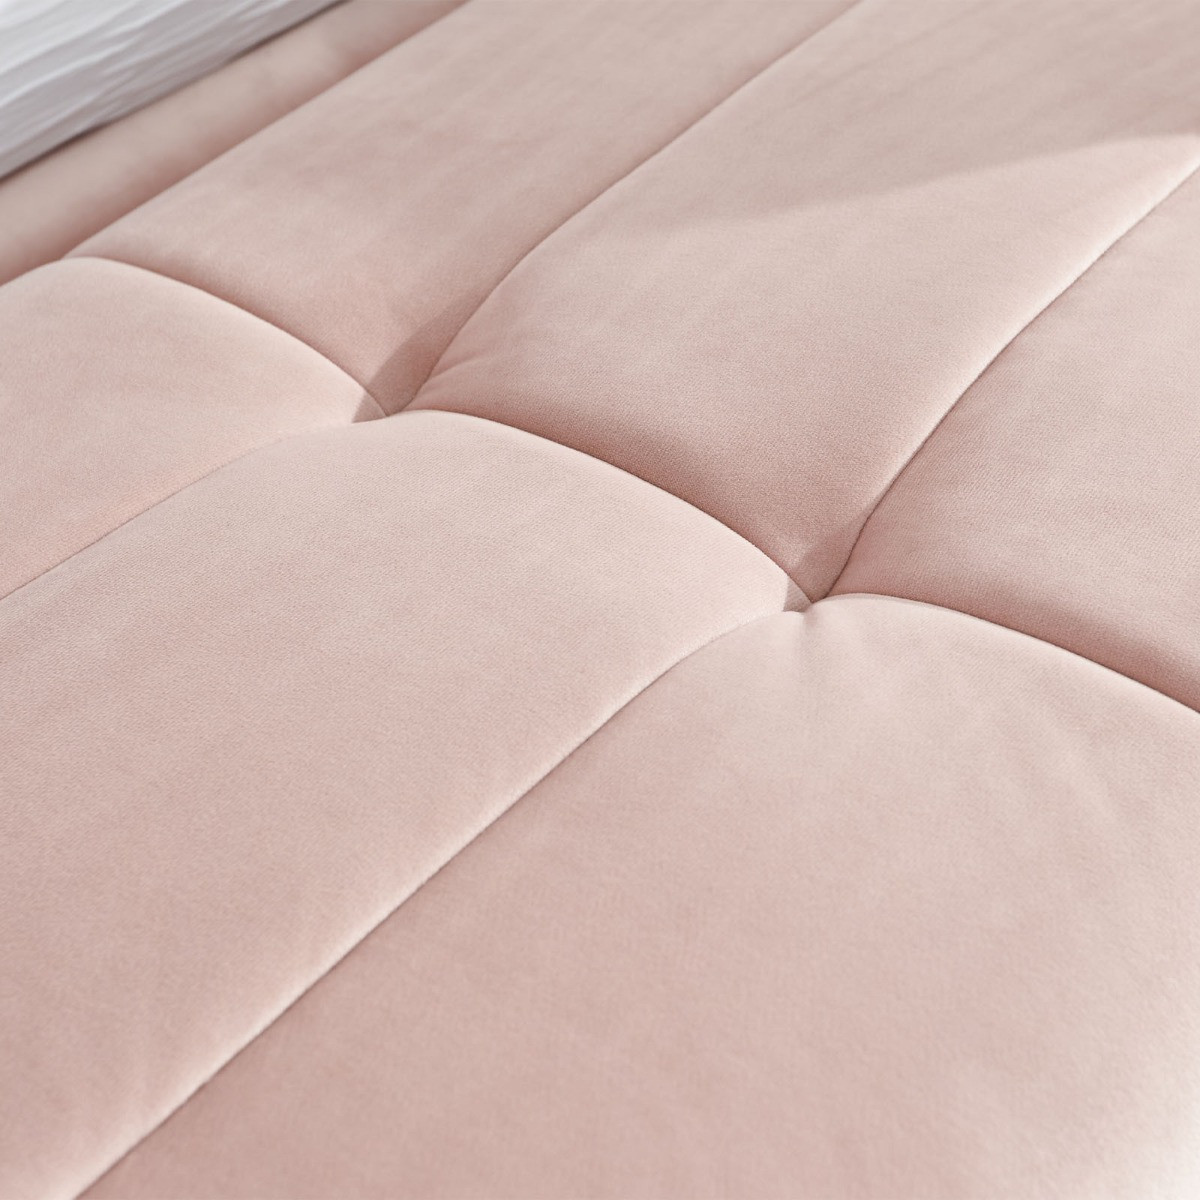 Pettine Fabric Ottoman Storage Bench - Blush Pink>